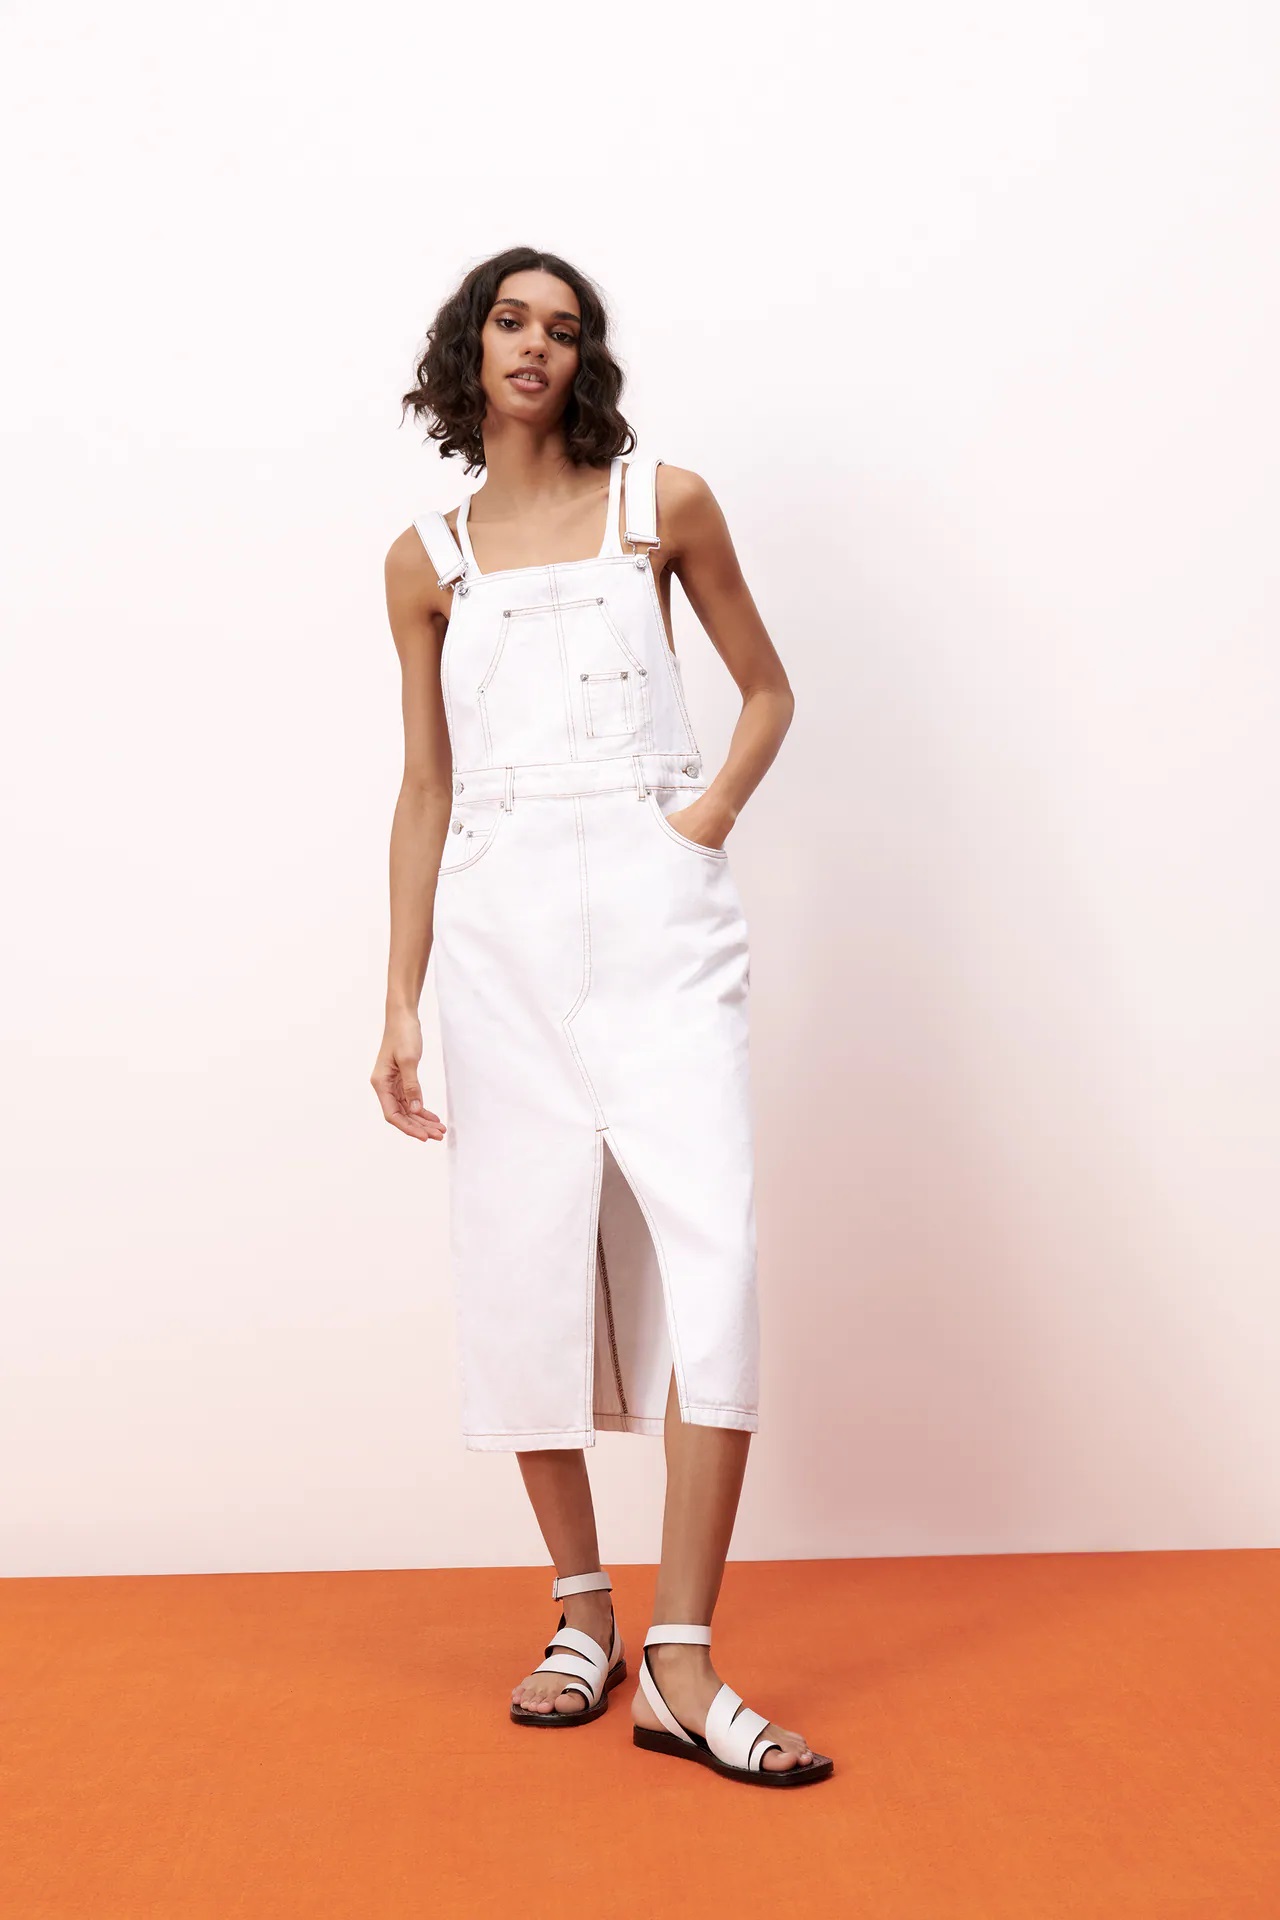 Zara: Vuelve pichi con fuerza esta primavera | Moda